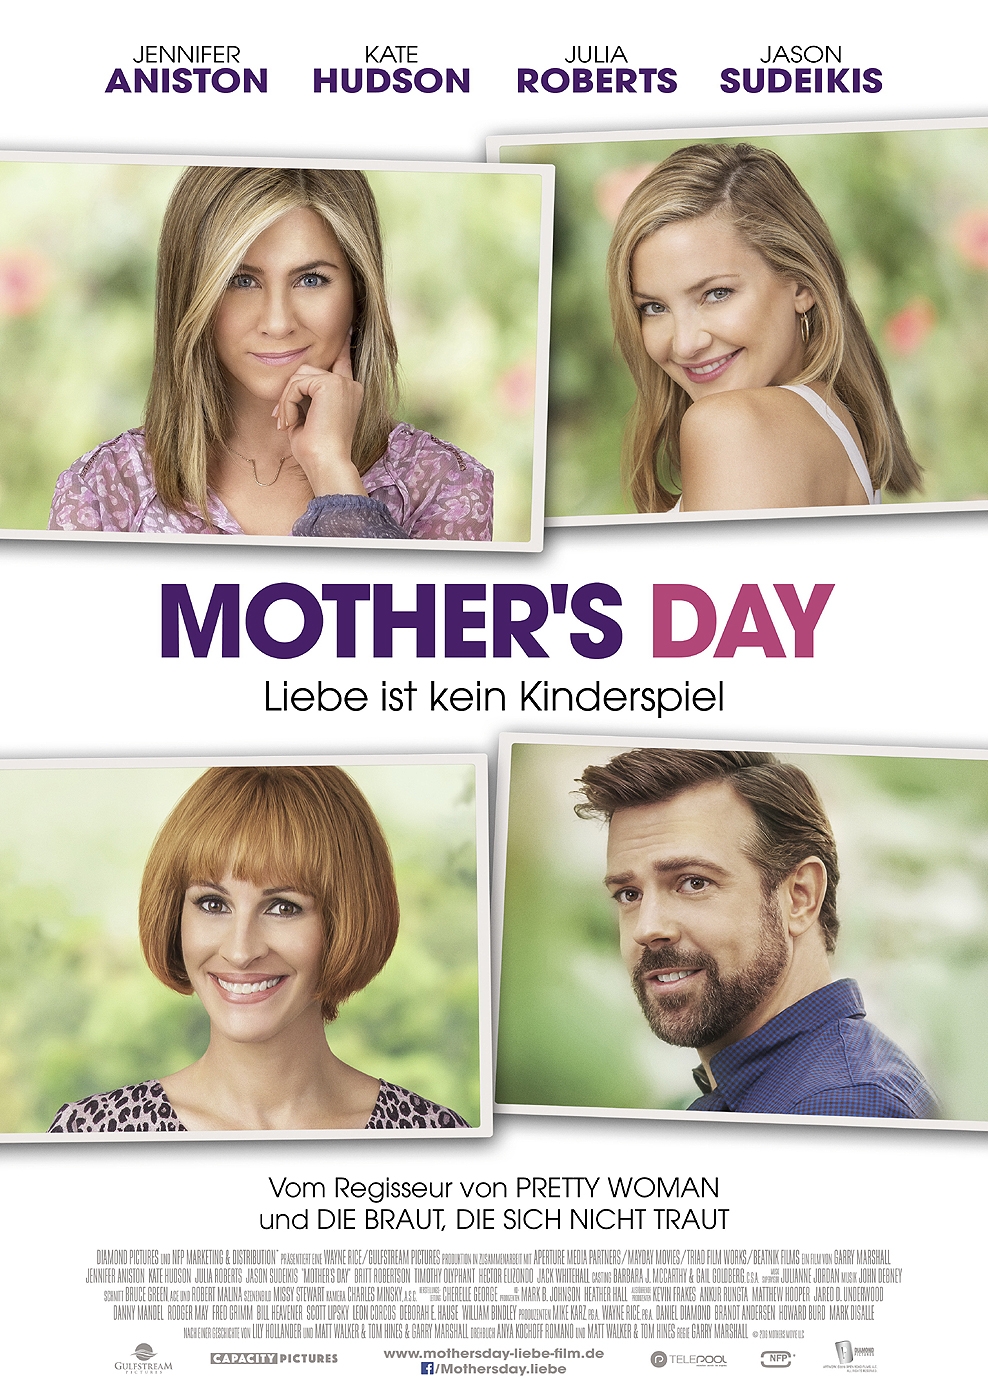 Mother's Day - Liebe ist kein Kinderspiel (Poster)